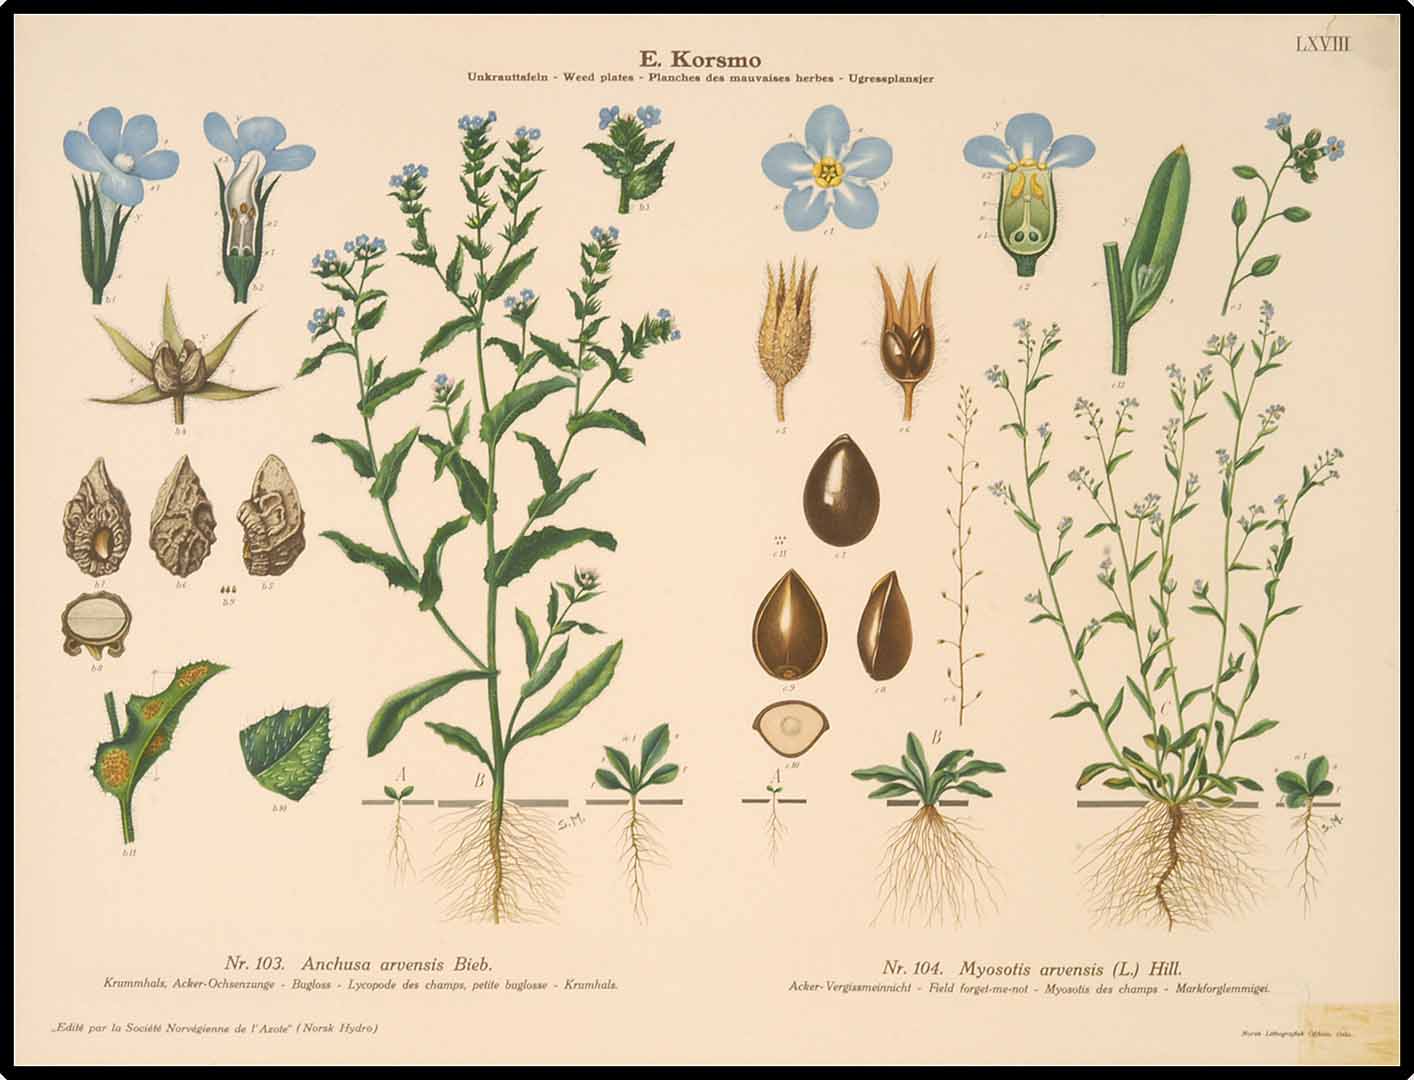 Illustration Myosotis arvensis, Par Korsmo, E., Unkrauttaflen - Weed plates - Planches des mauvaises herbes - Ugressplansjer (1934-1938), via plantillustrations.org 